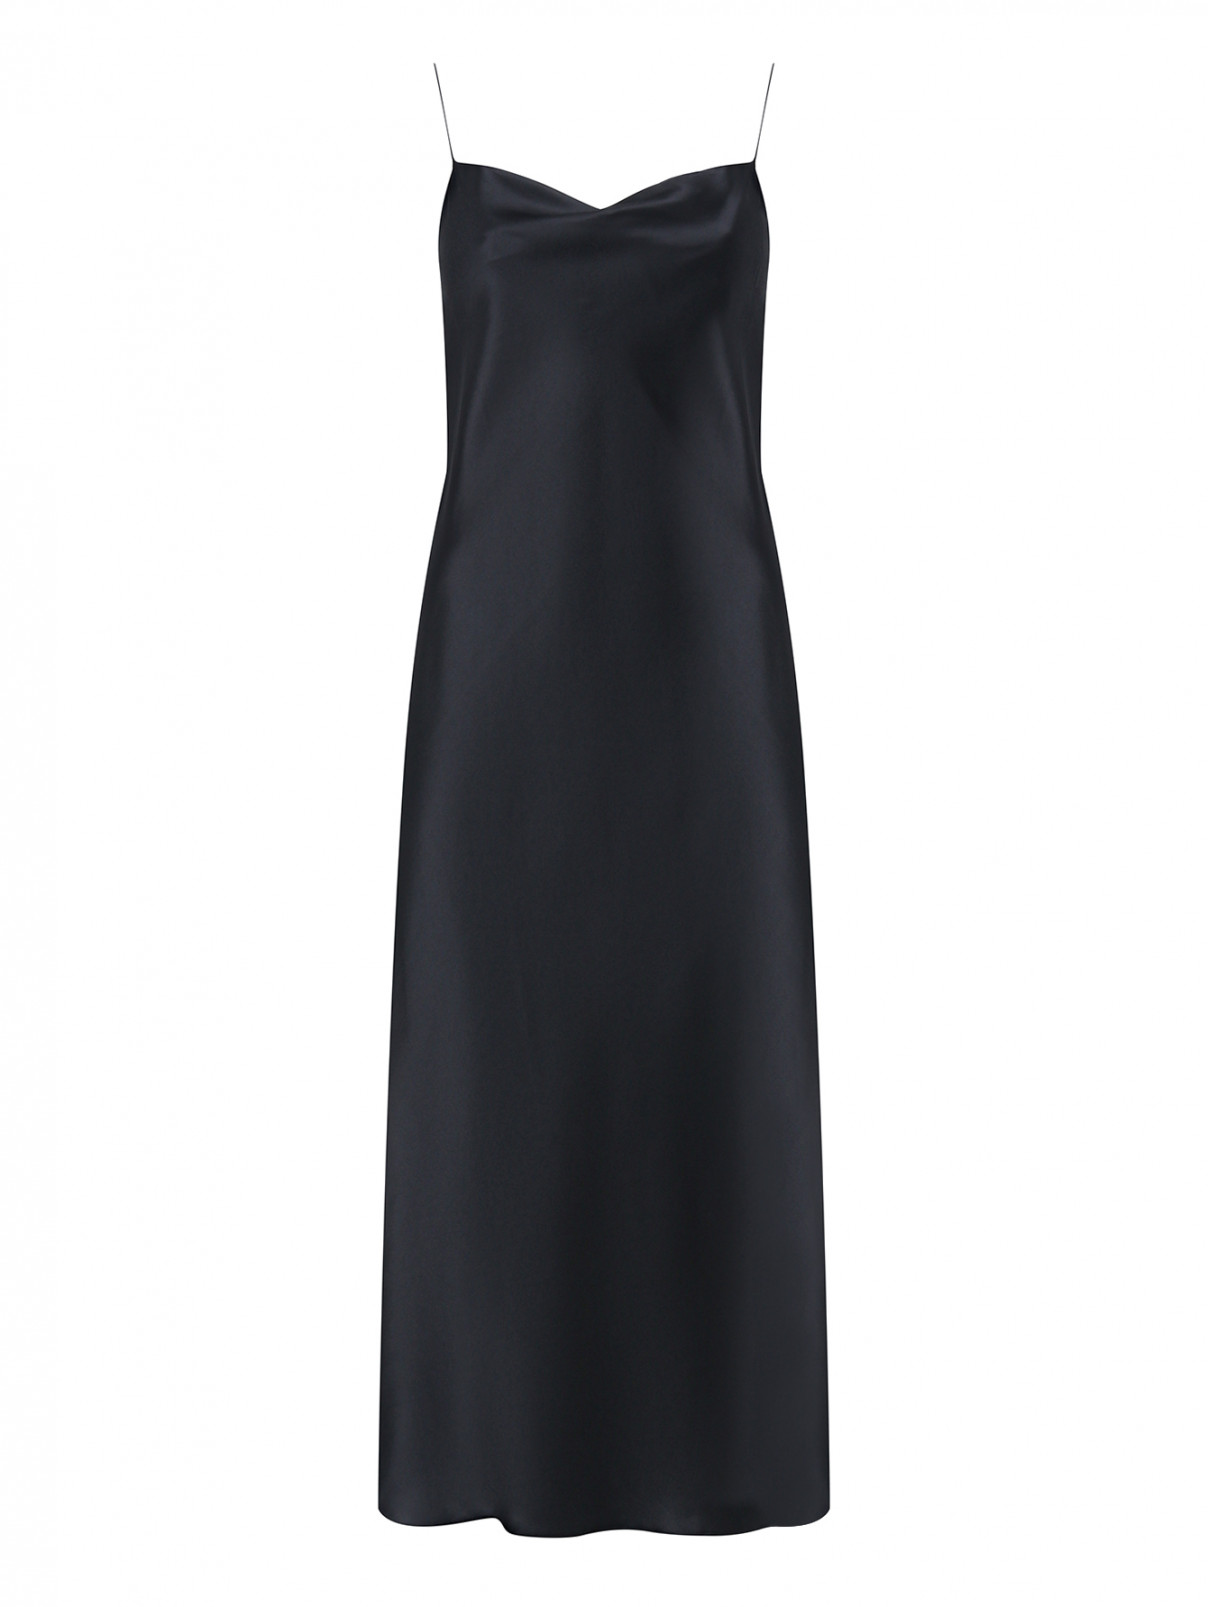 Платье-комбинация из шелка Dorothee Schumacher  –  Общий вид  – Цвет:  Черный